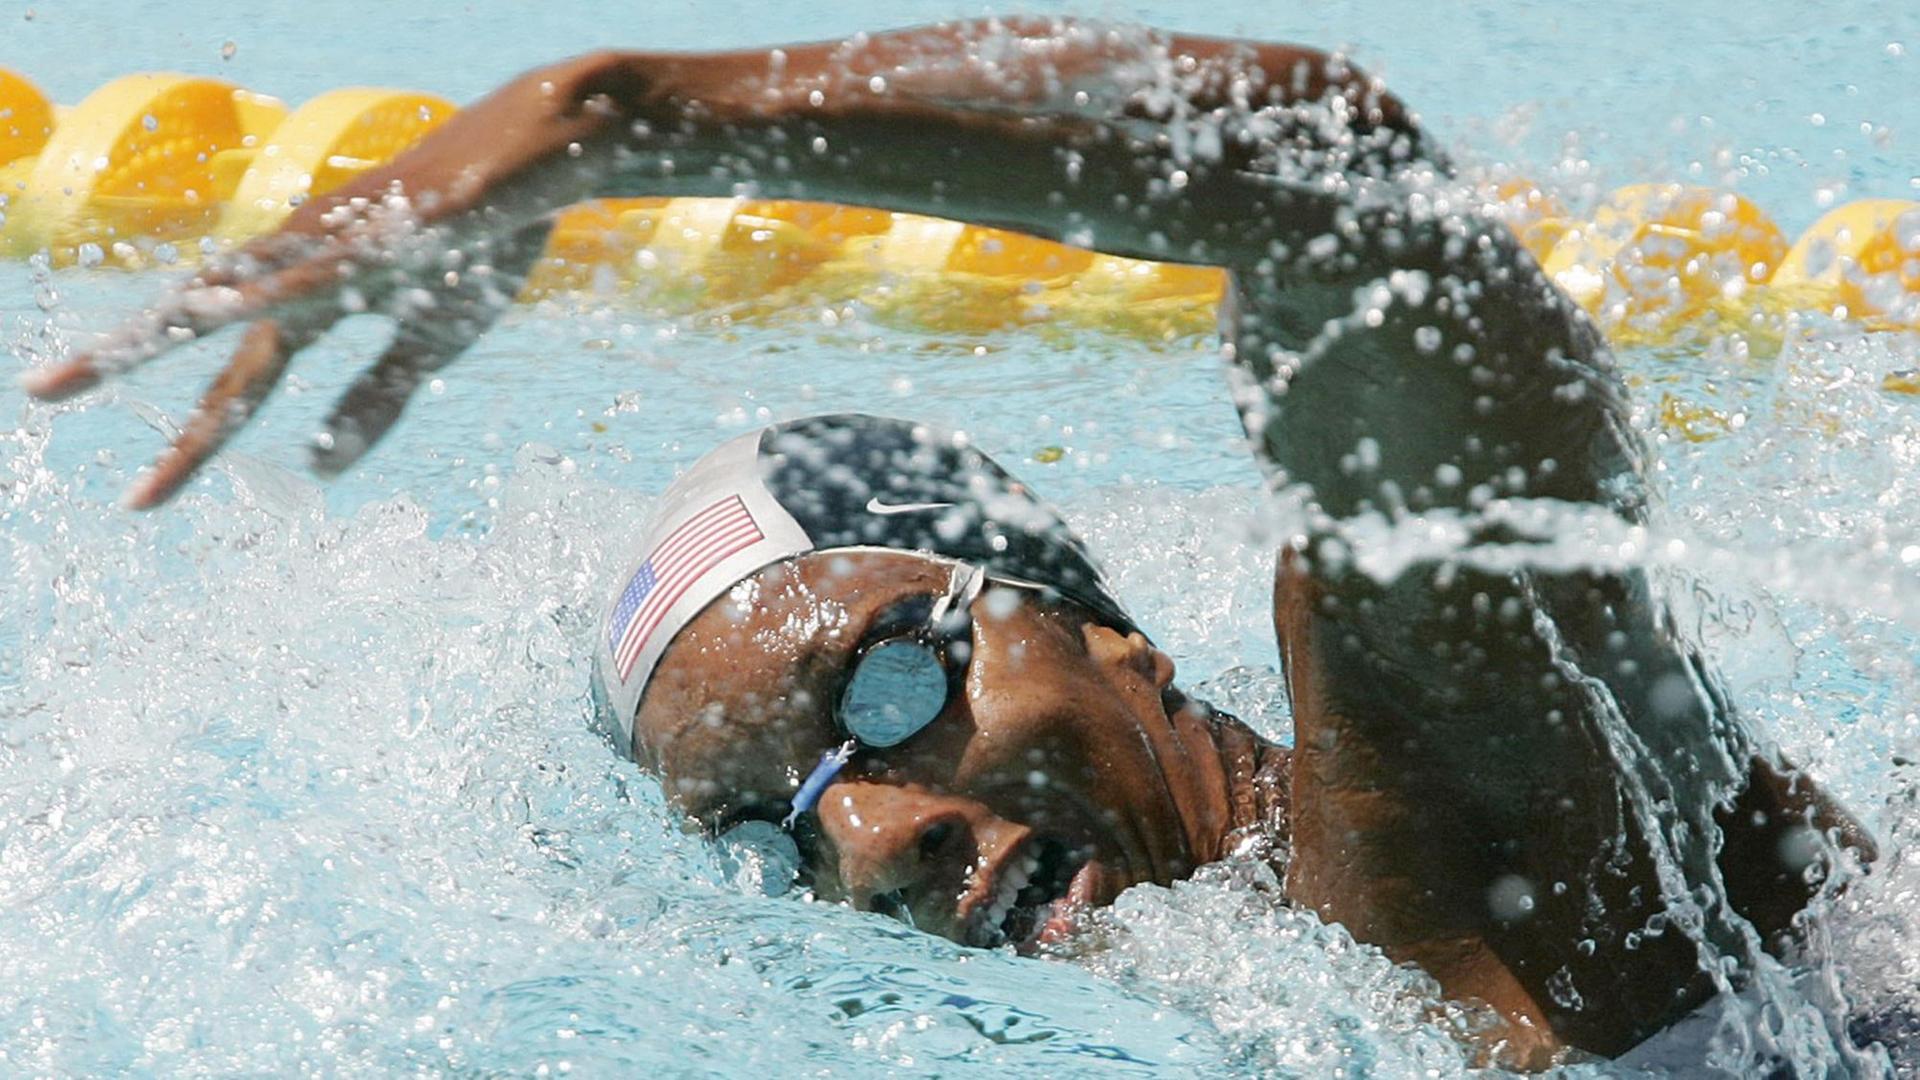 Maritza Correia schwimmt bei den Olympischen Spielen von Athen 2004 mit Badekappe.